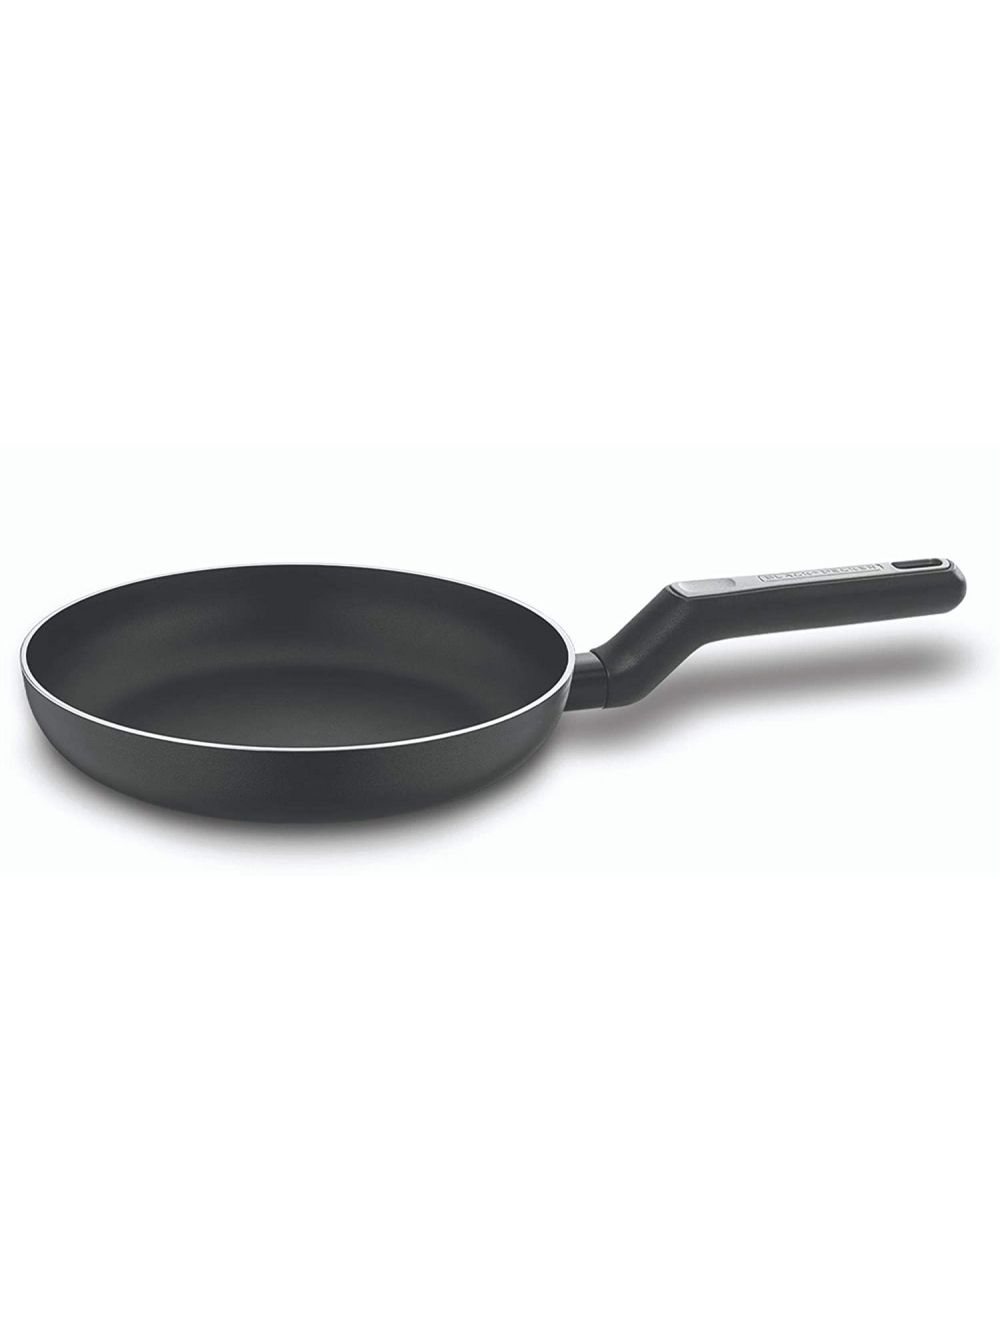 Black+Decker 26 cm Non-Stick Fry Pan With 5 Layer PTFE  -BDCW-BXSFP26BME